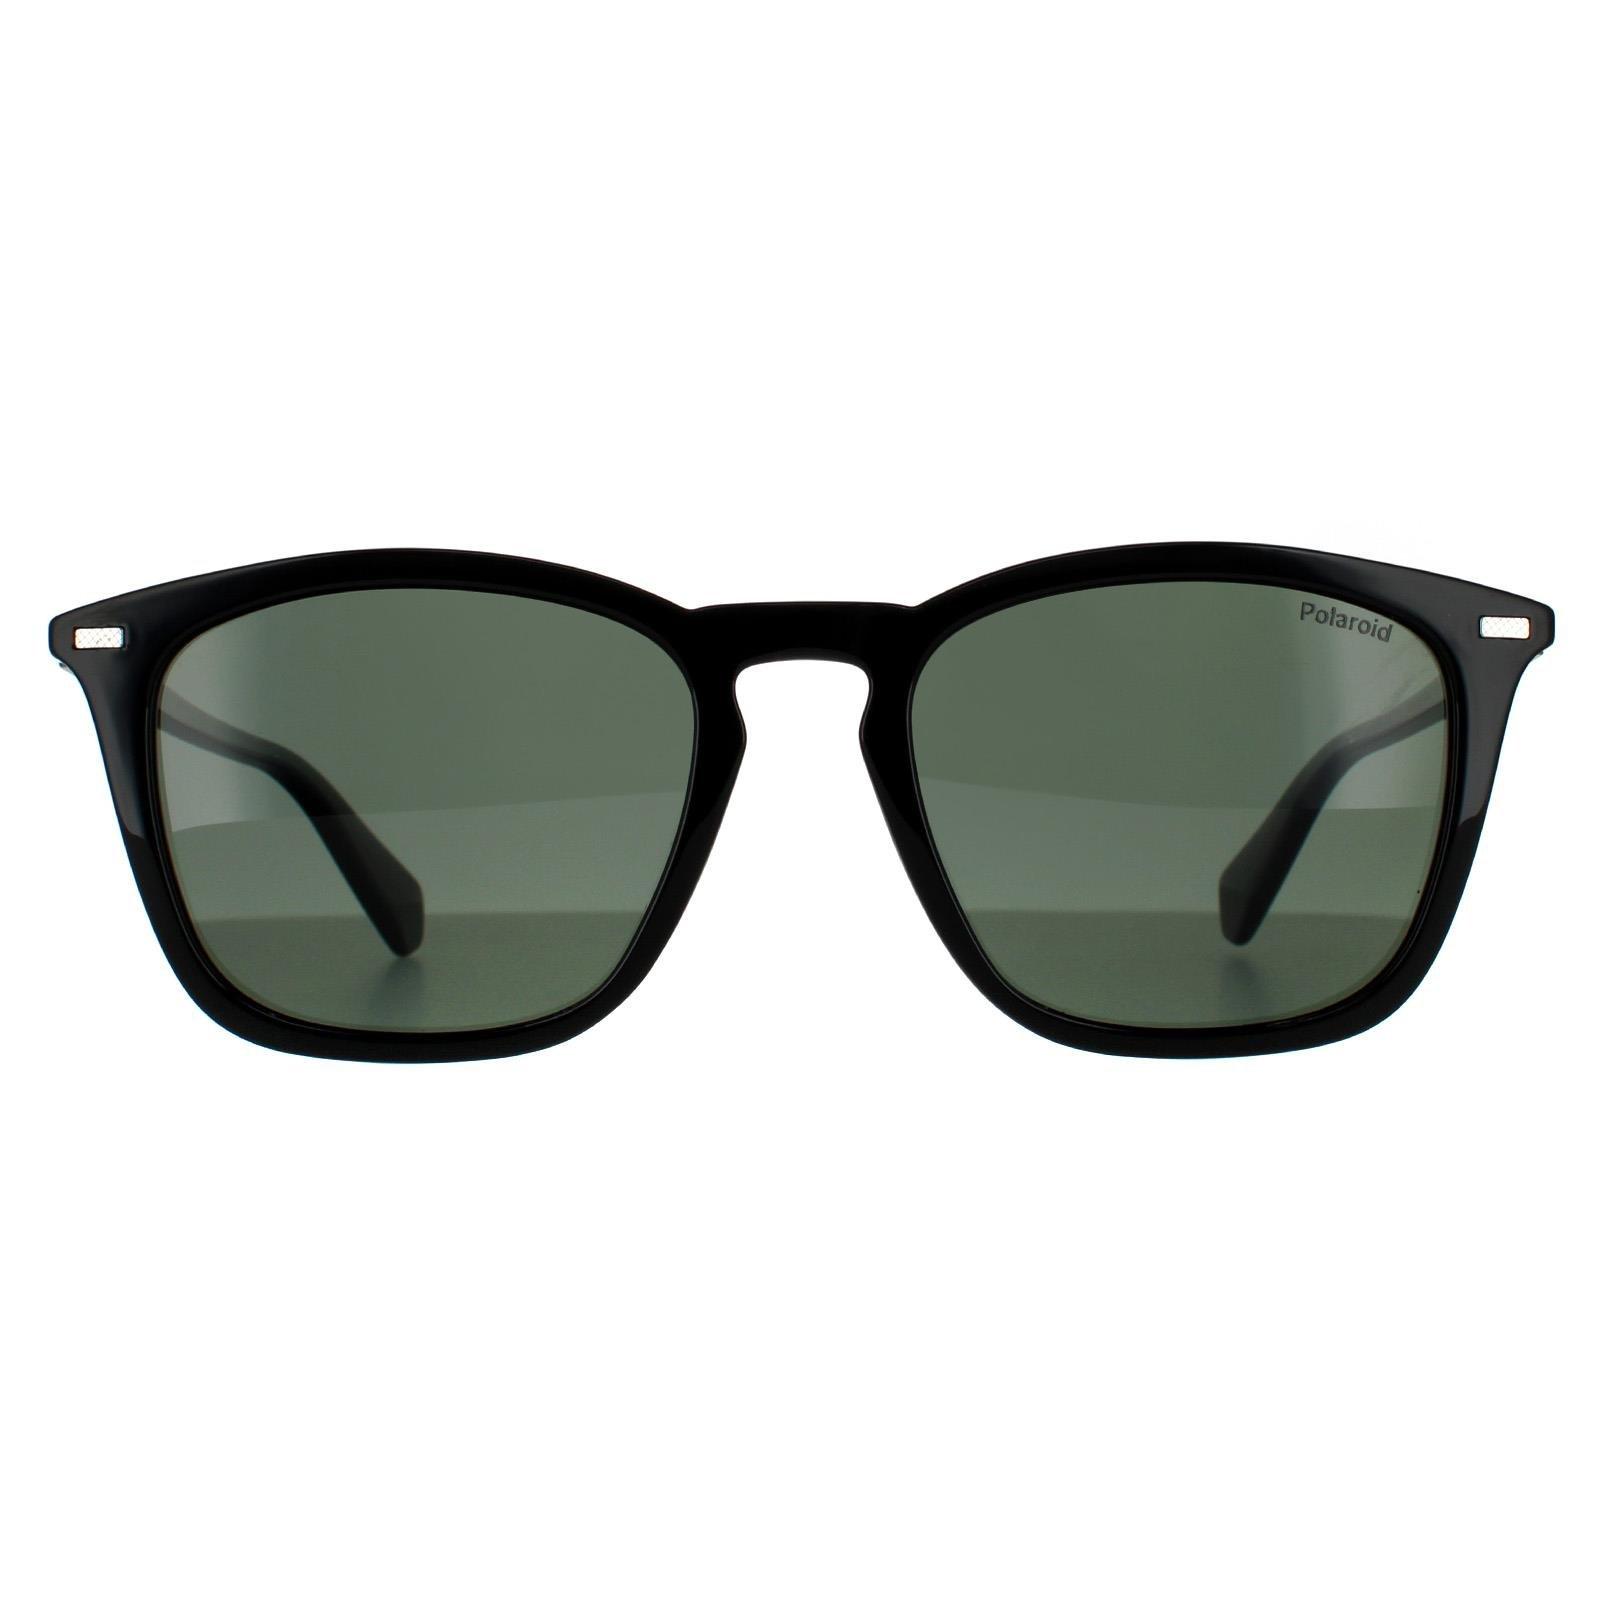 Кошачий глаз Черный Серый SF1059S Salvatore Ferragamo, черный солнцезащитные очки tropical кошачий глаз оправа пластик градиентные для женщин черный